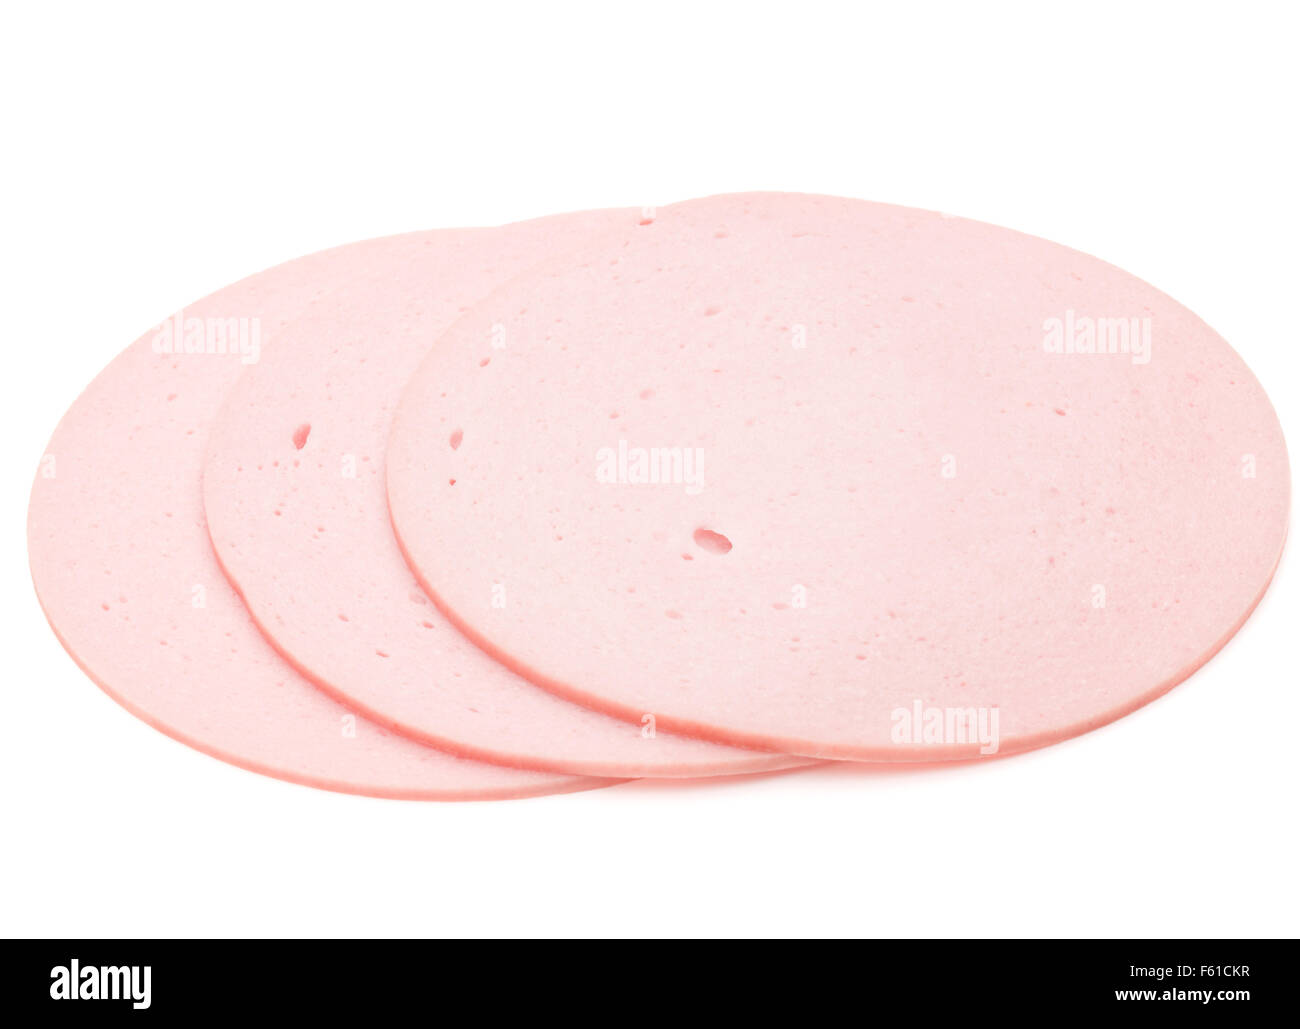 gekochte Wurst oder Bologna isolierte auf weißem Hintergrund Ausschnitt Scheiben Kochschinken Stockfoto